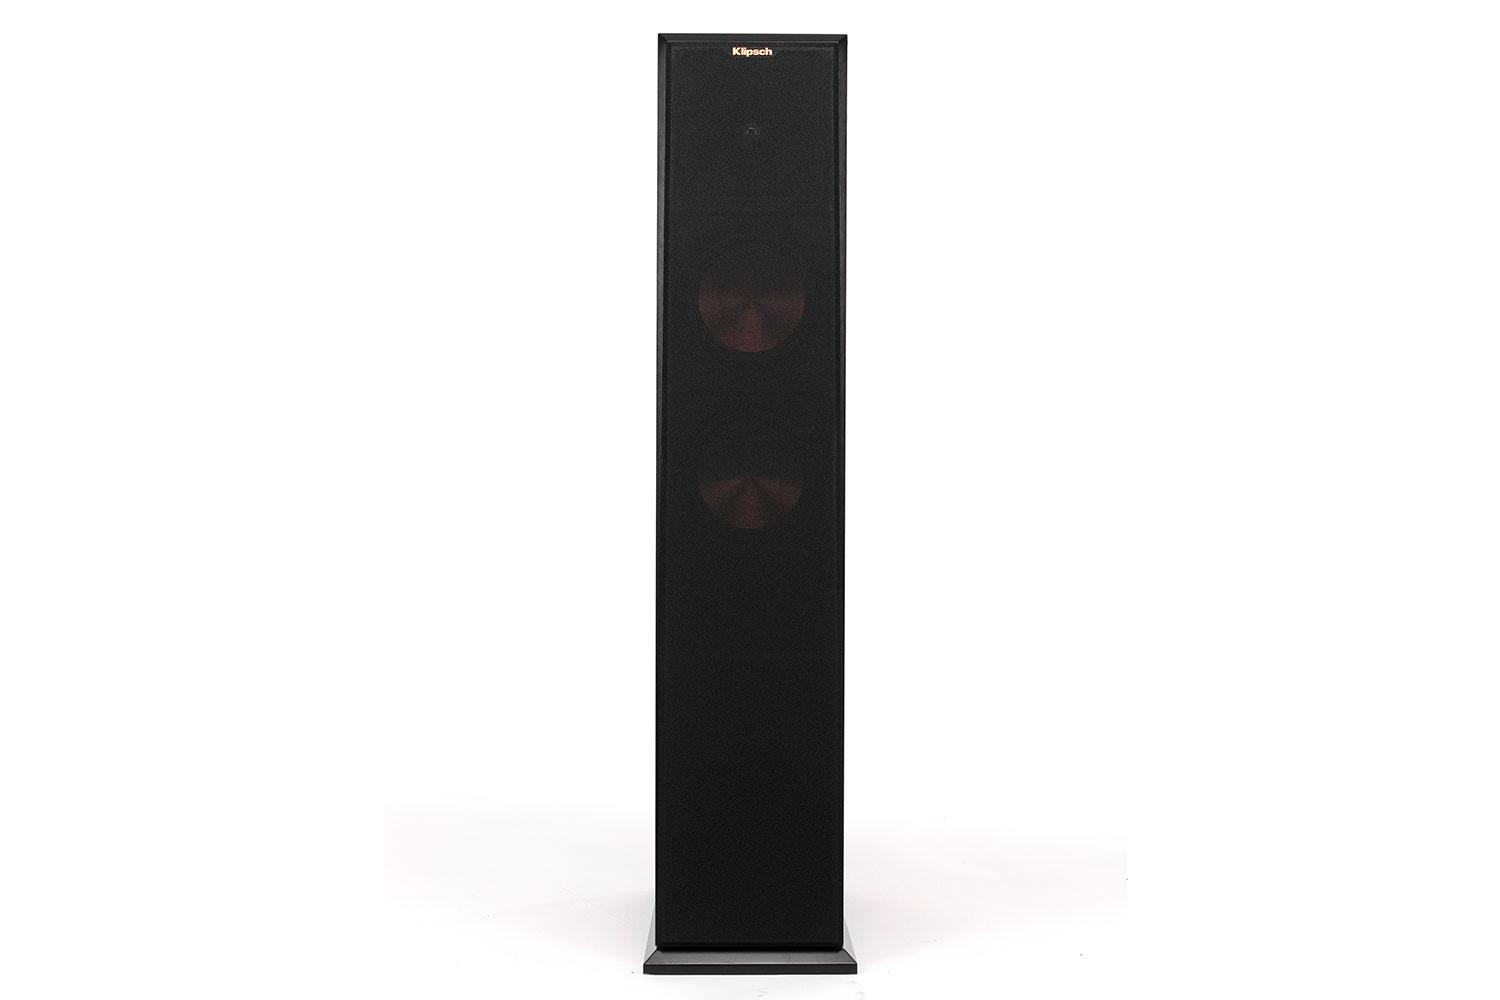 klipsch reference premier speaker system debuts at ces 2015 260f front grille